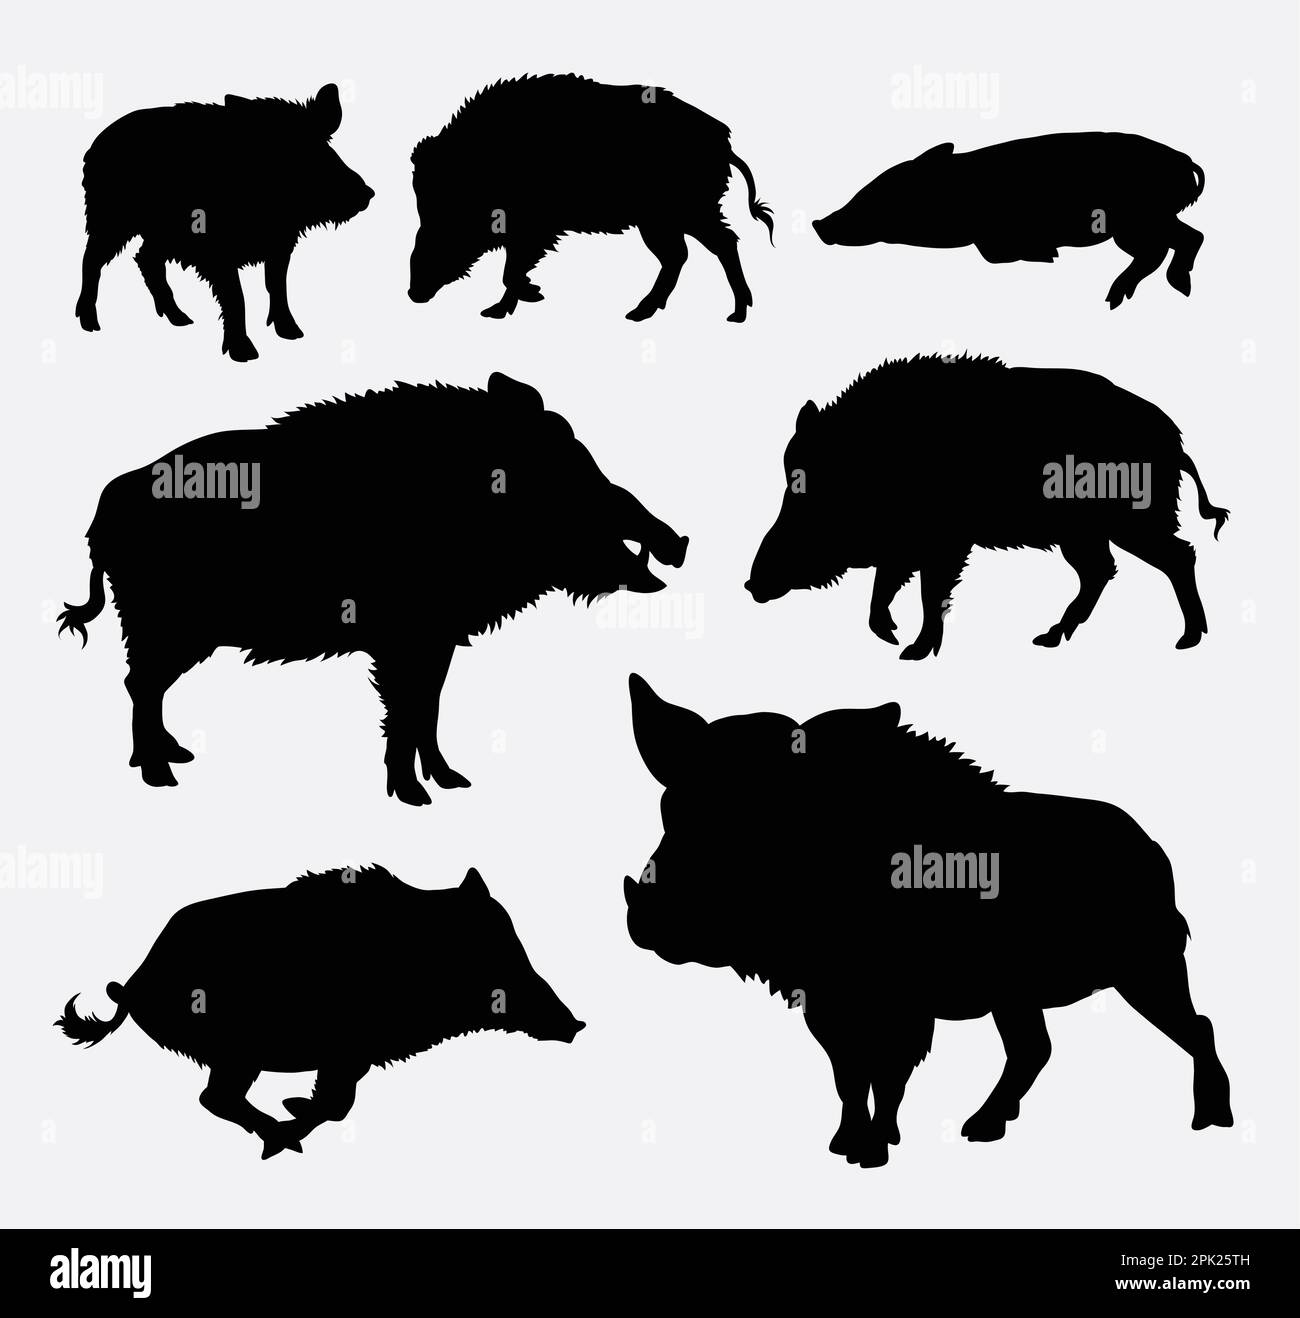 Wild boar silhouette Stock Vector